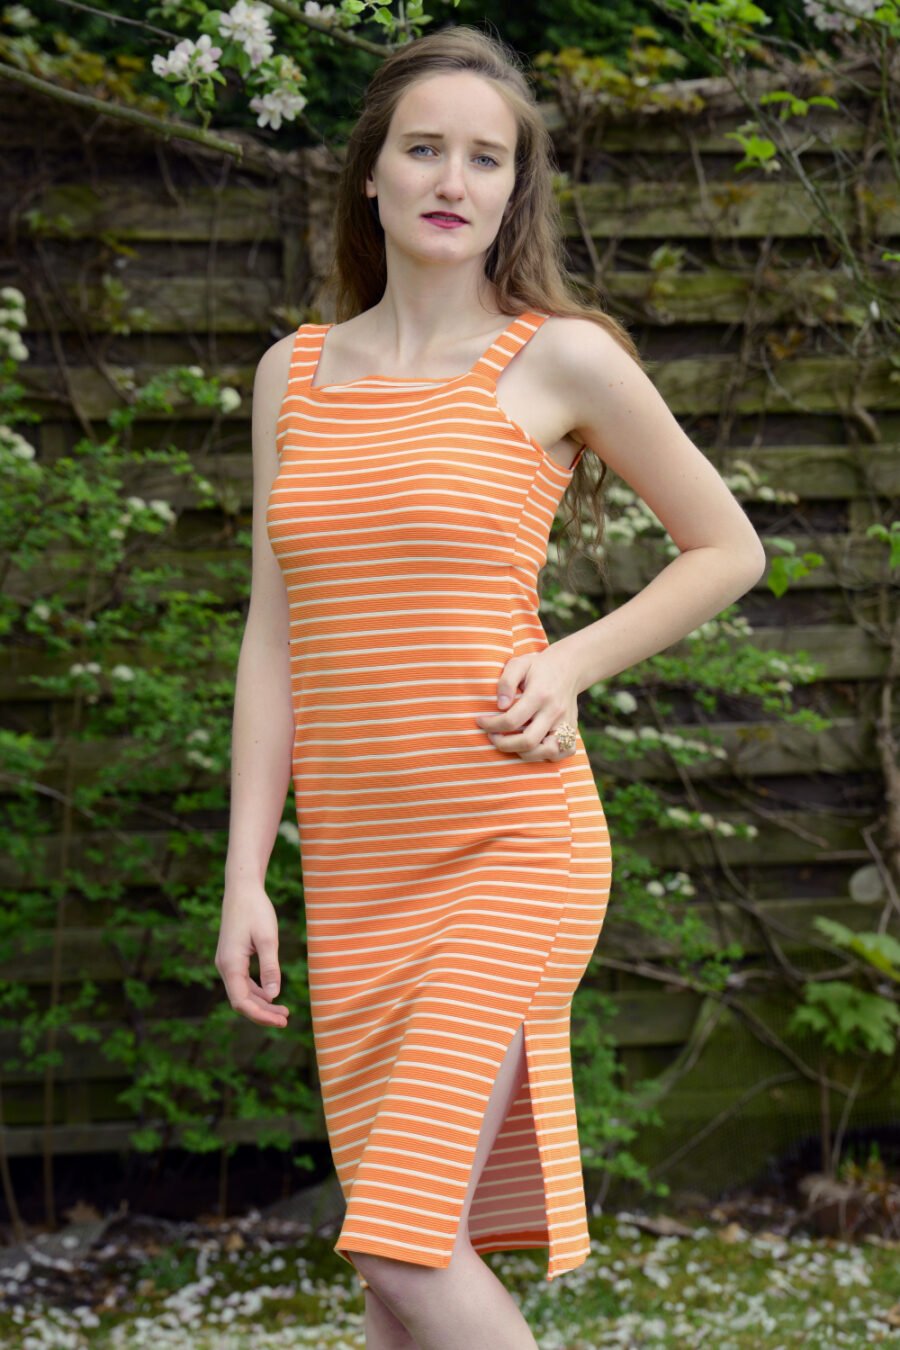 "Rhyming Orange" Dress by Lez a Lez